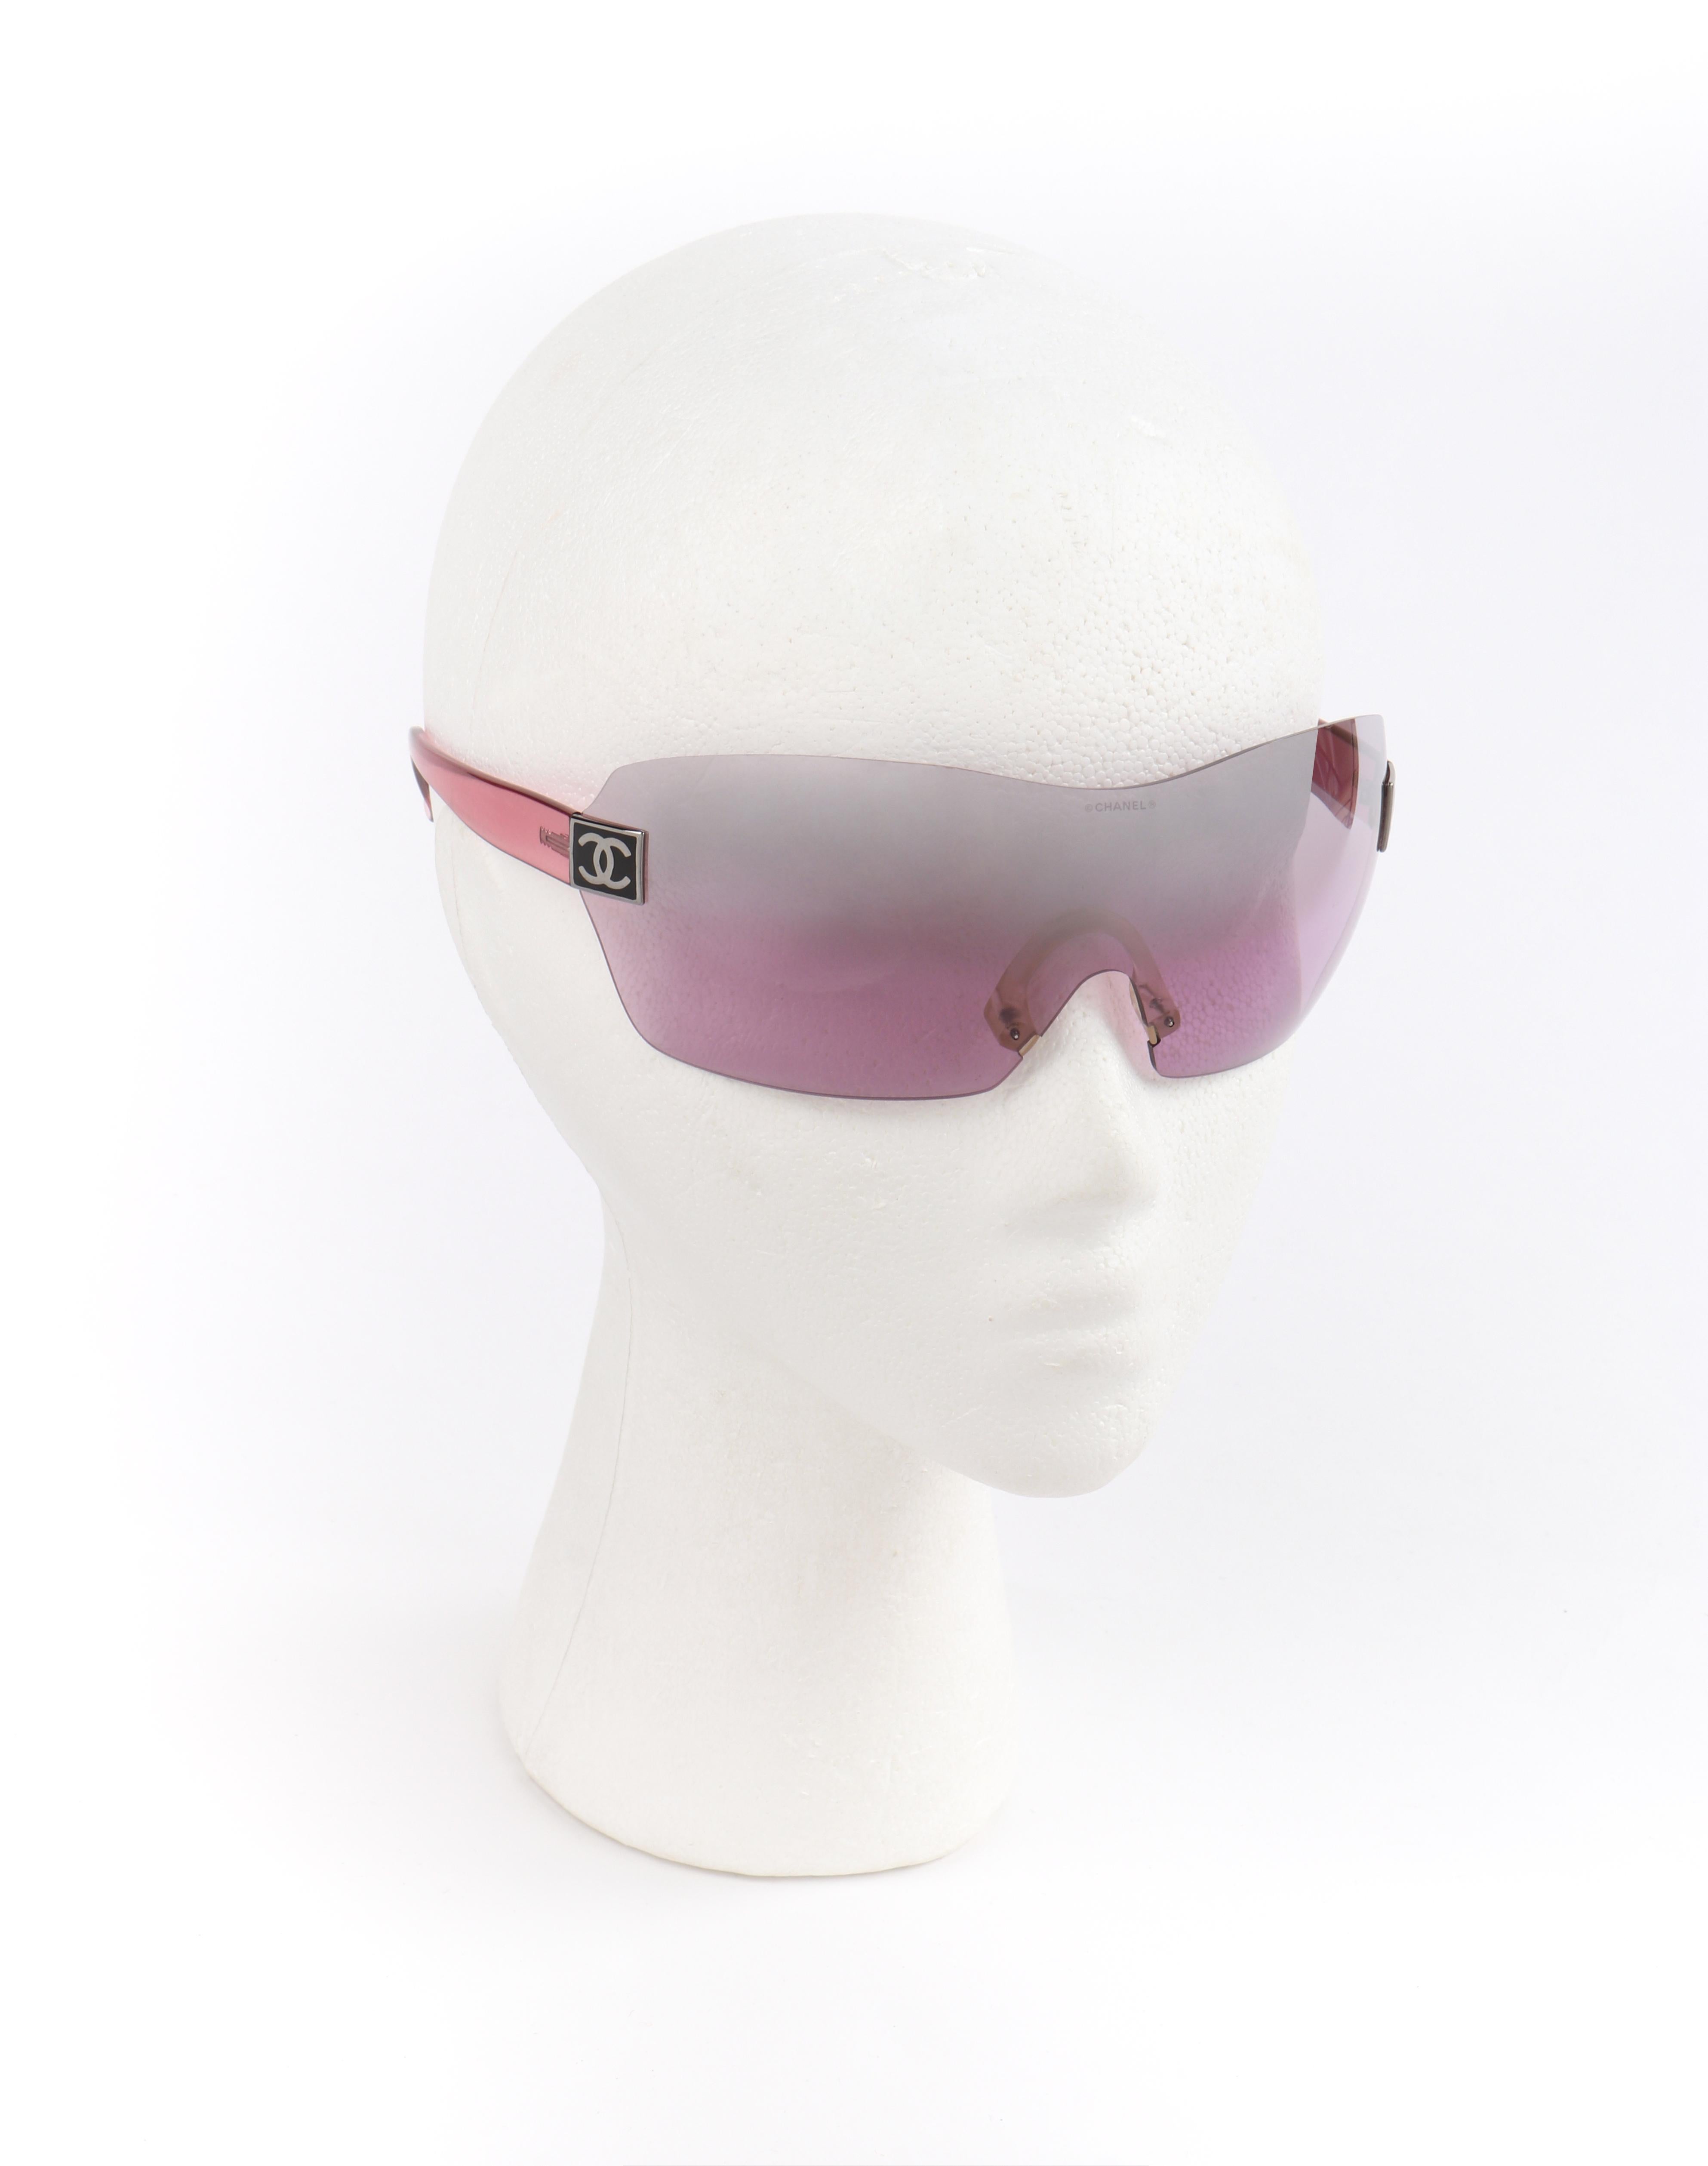 CHANEL c.2000's Pink Translucent CC Logo Shield Rimless Sunglasses 4111 w/Box
 
Marke/Hersteller: Chanel
Circa: 2000's
Designer: Karl Lagerfeld
Stil: Randlose Schild-Sonnenbrille
Farbe(n): Rosafarben:: schwarz:: silber
Gefüttert: Nein
Unmarked